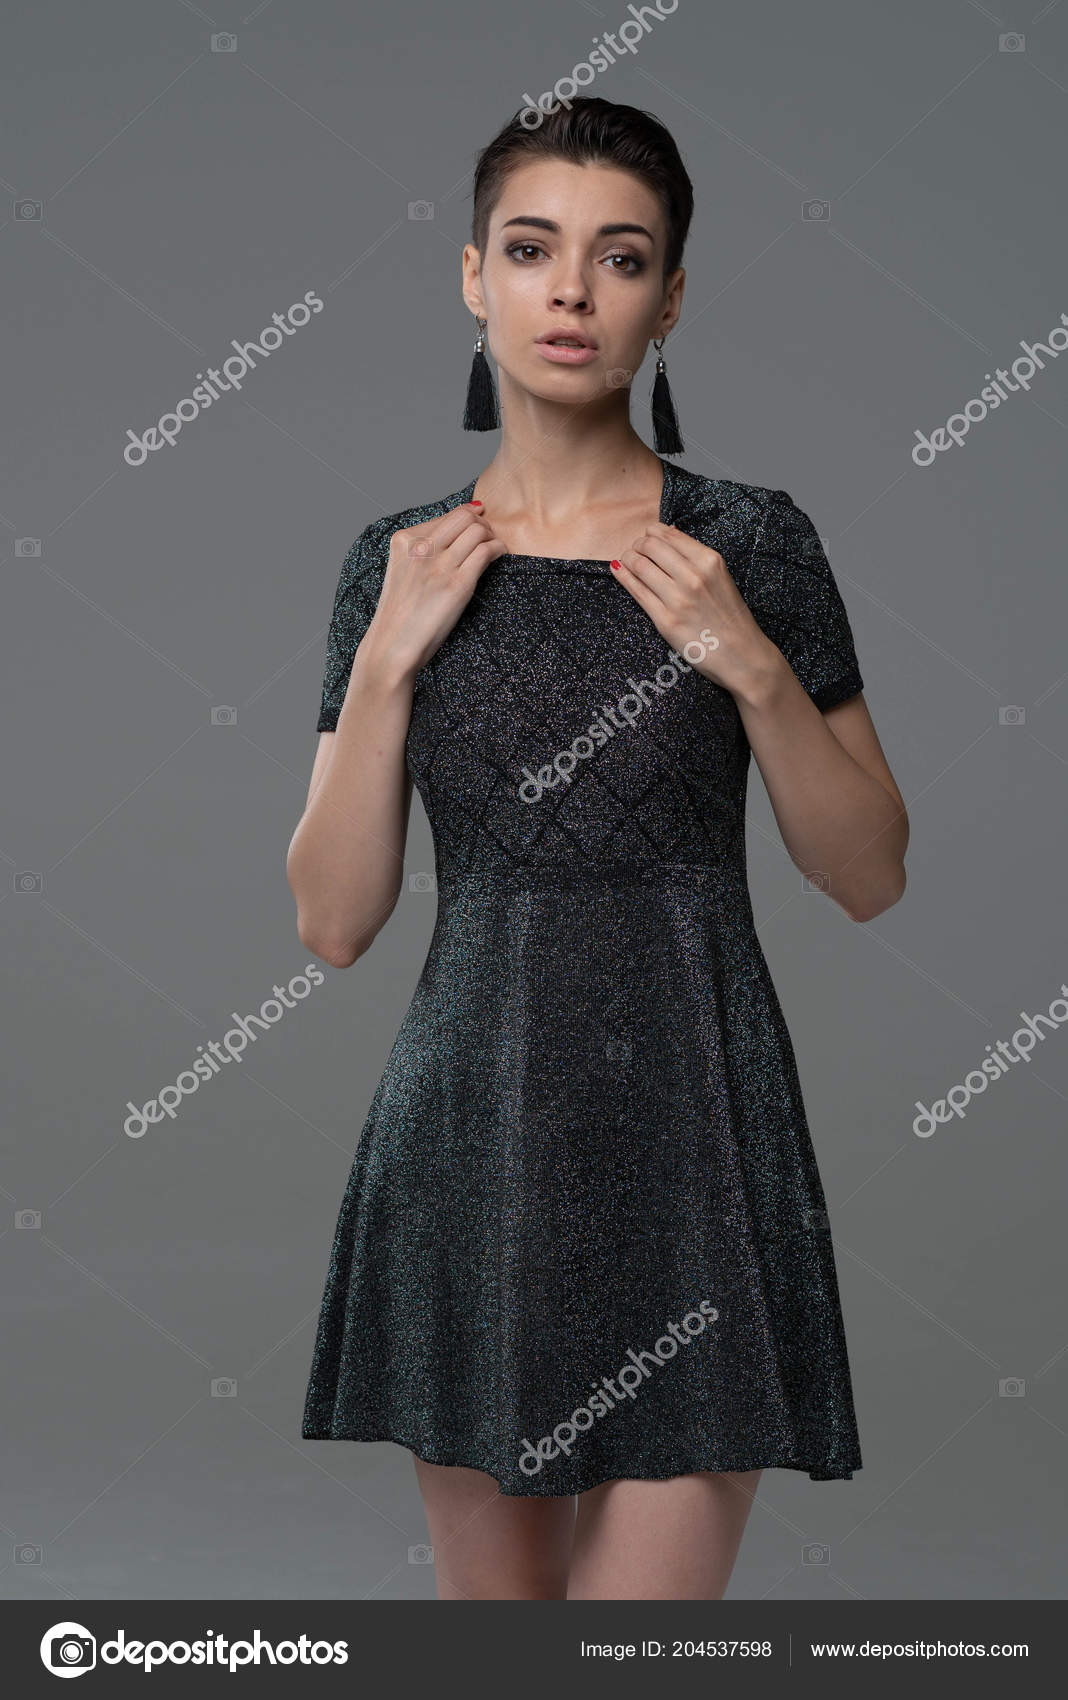 https://st4.depositphotos.com/10086424/20453/i/1600/depositphotos_204537598-stock-photo-young-beautiful-girl-posing-studio.jpg